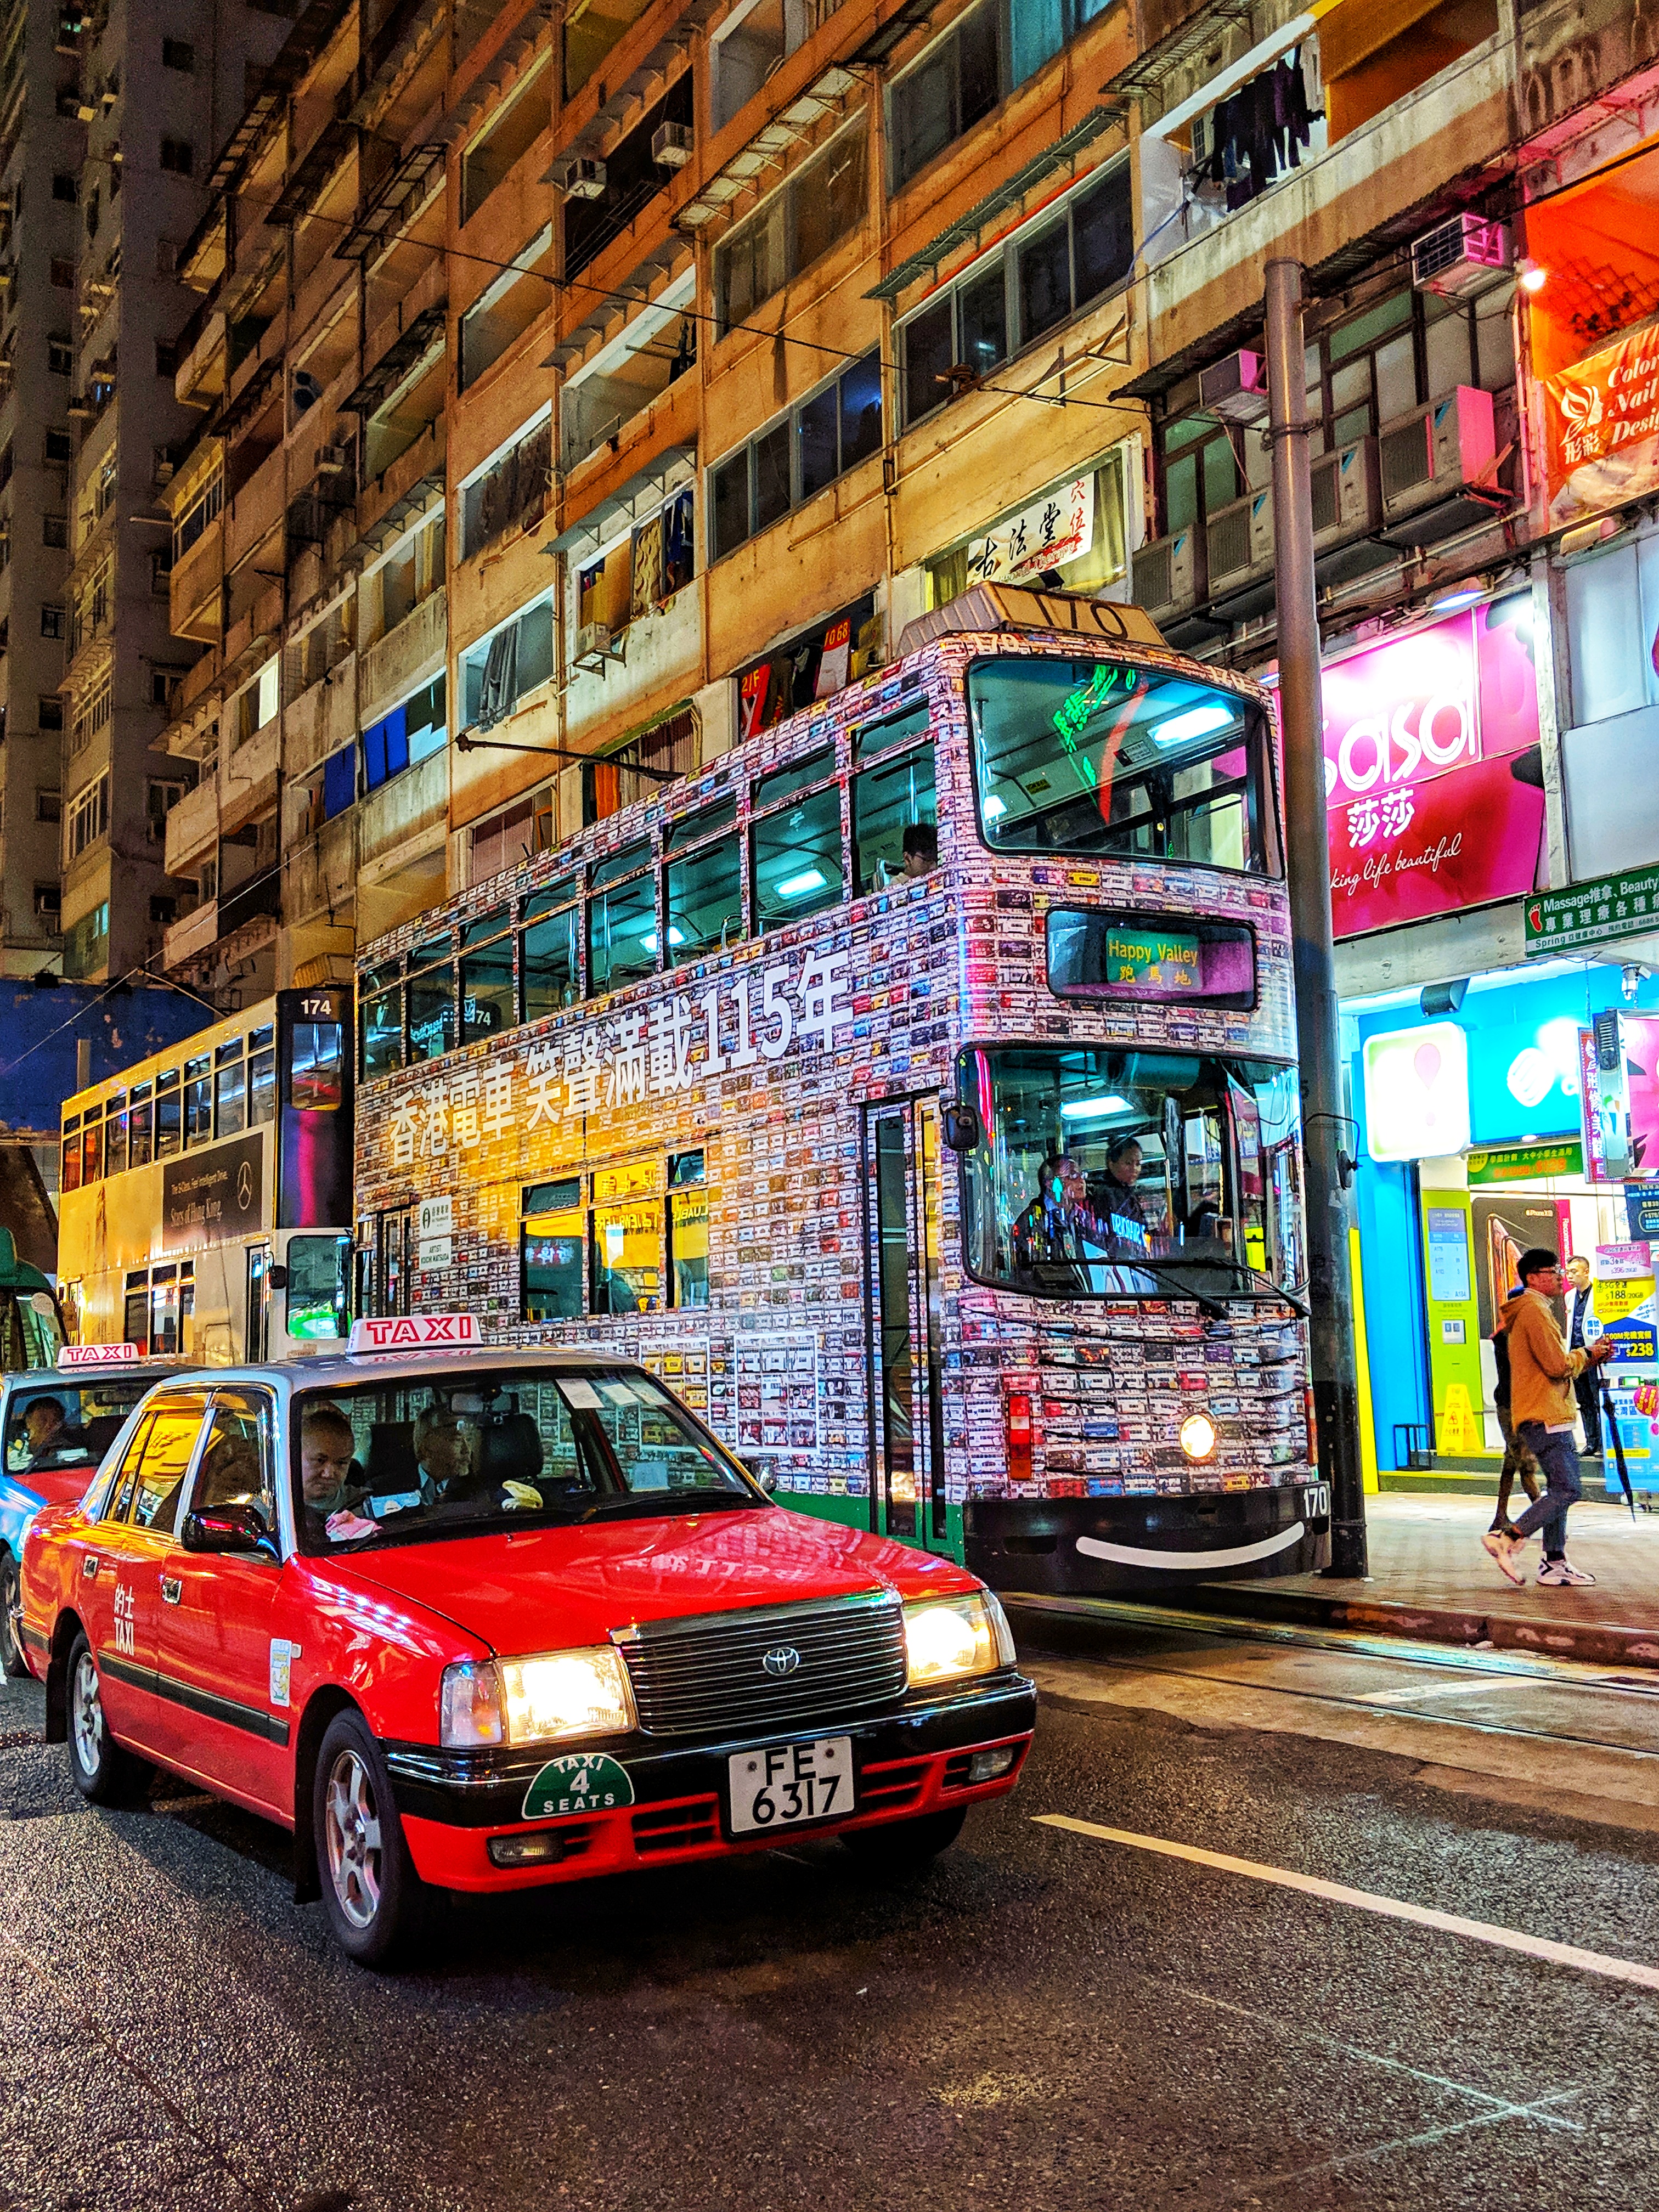 Taxi and tram in Hong Kong, China